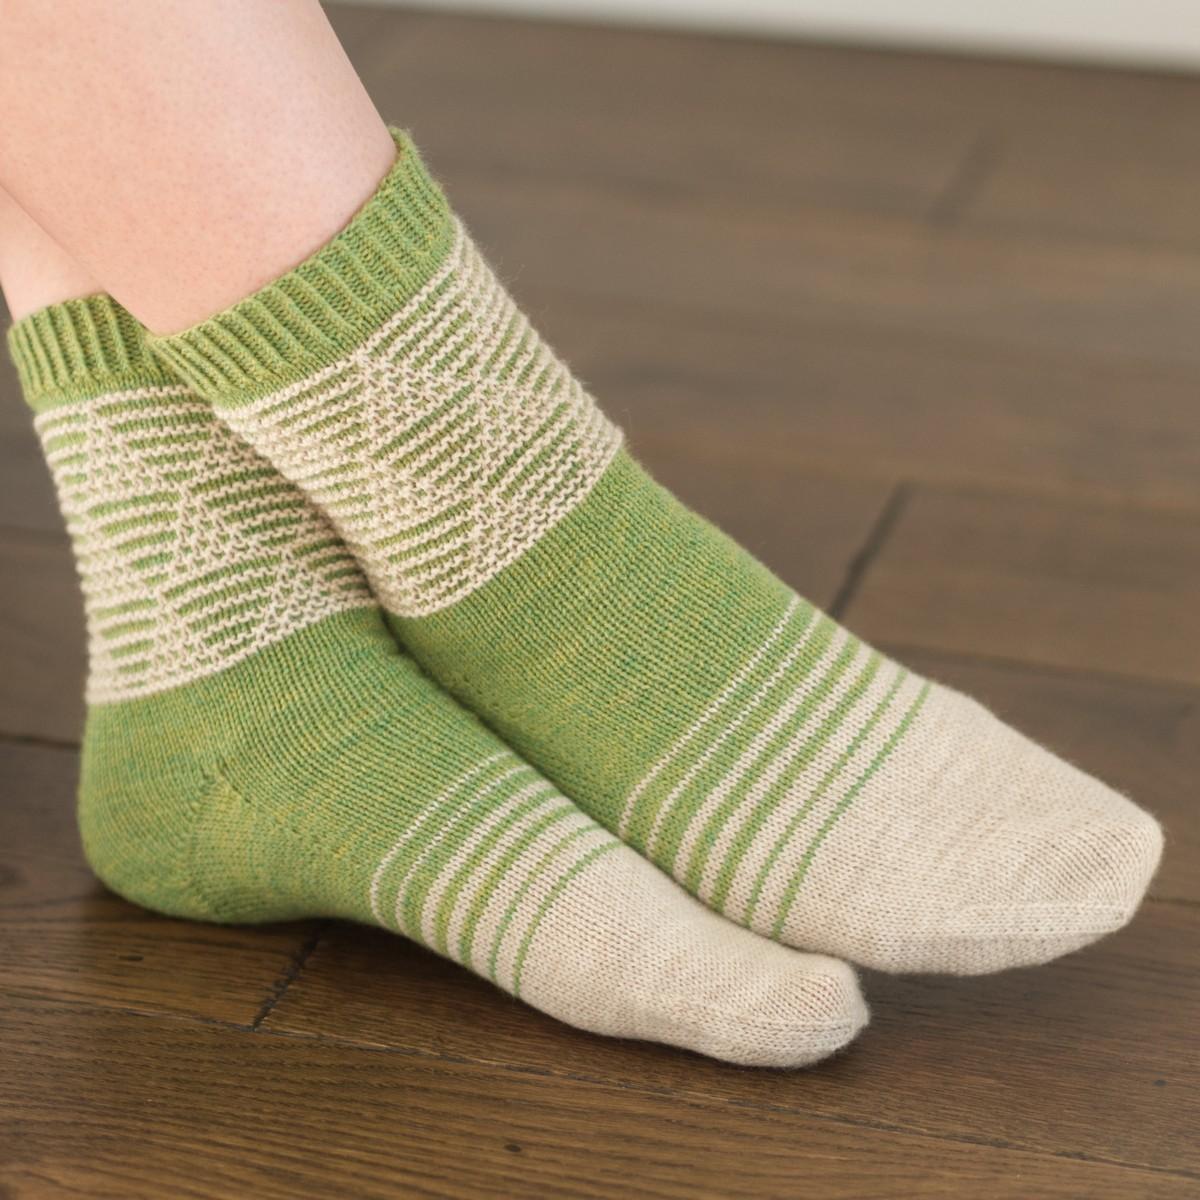 Fraser Pines Socks